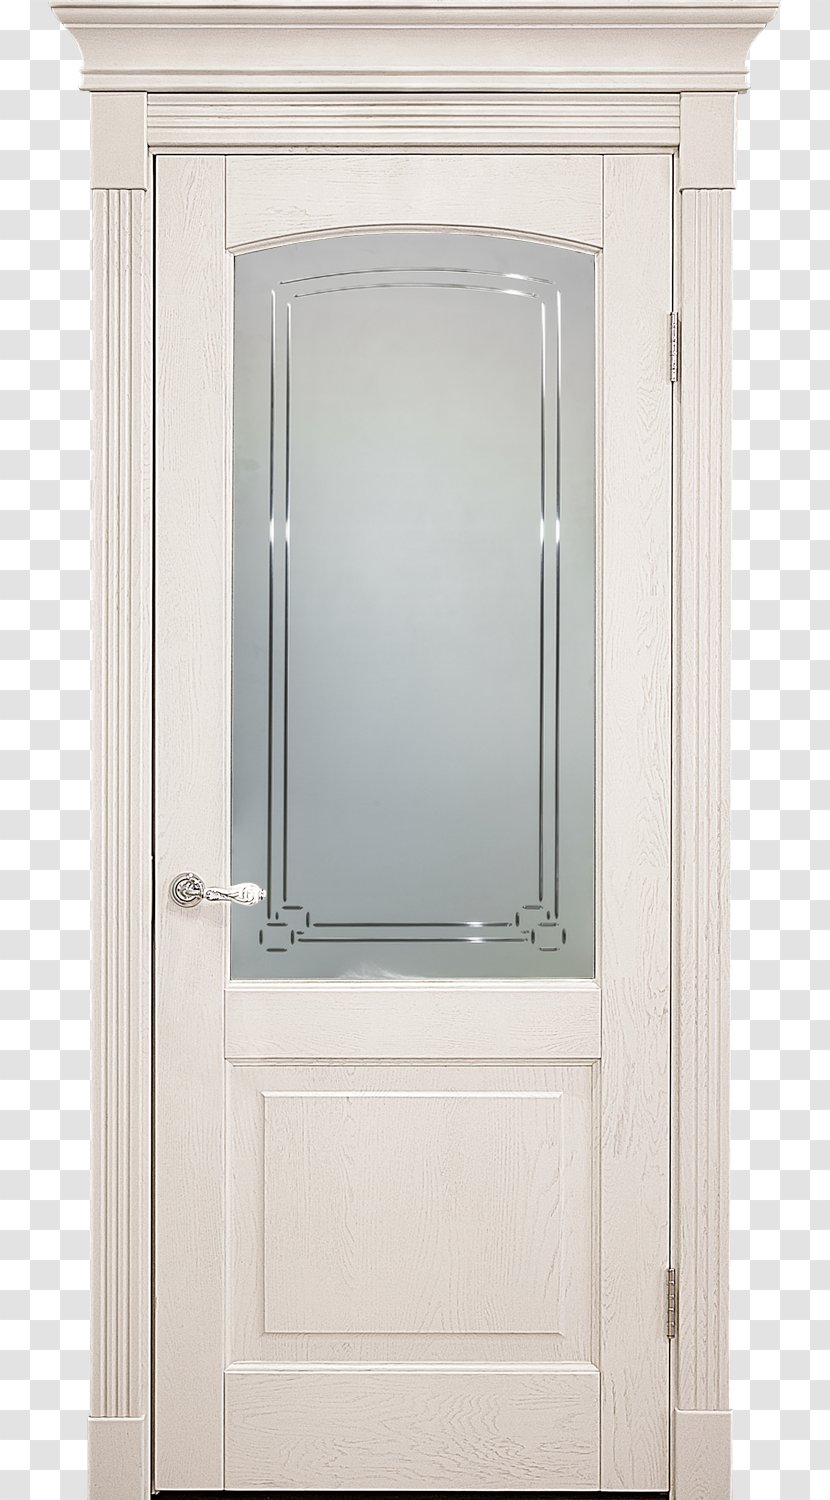 Bathroom Cabinet Window Cupboard Door Wood Stain - Doors Transparent PNG